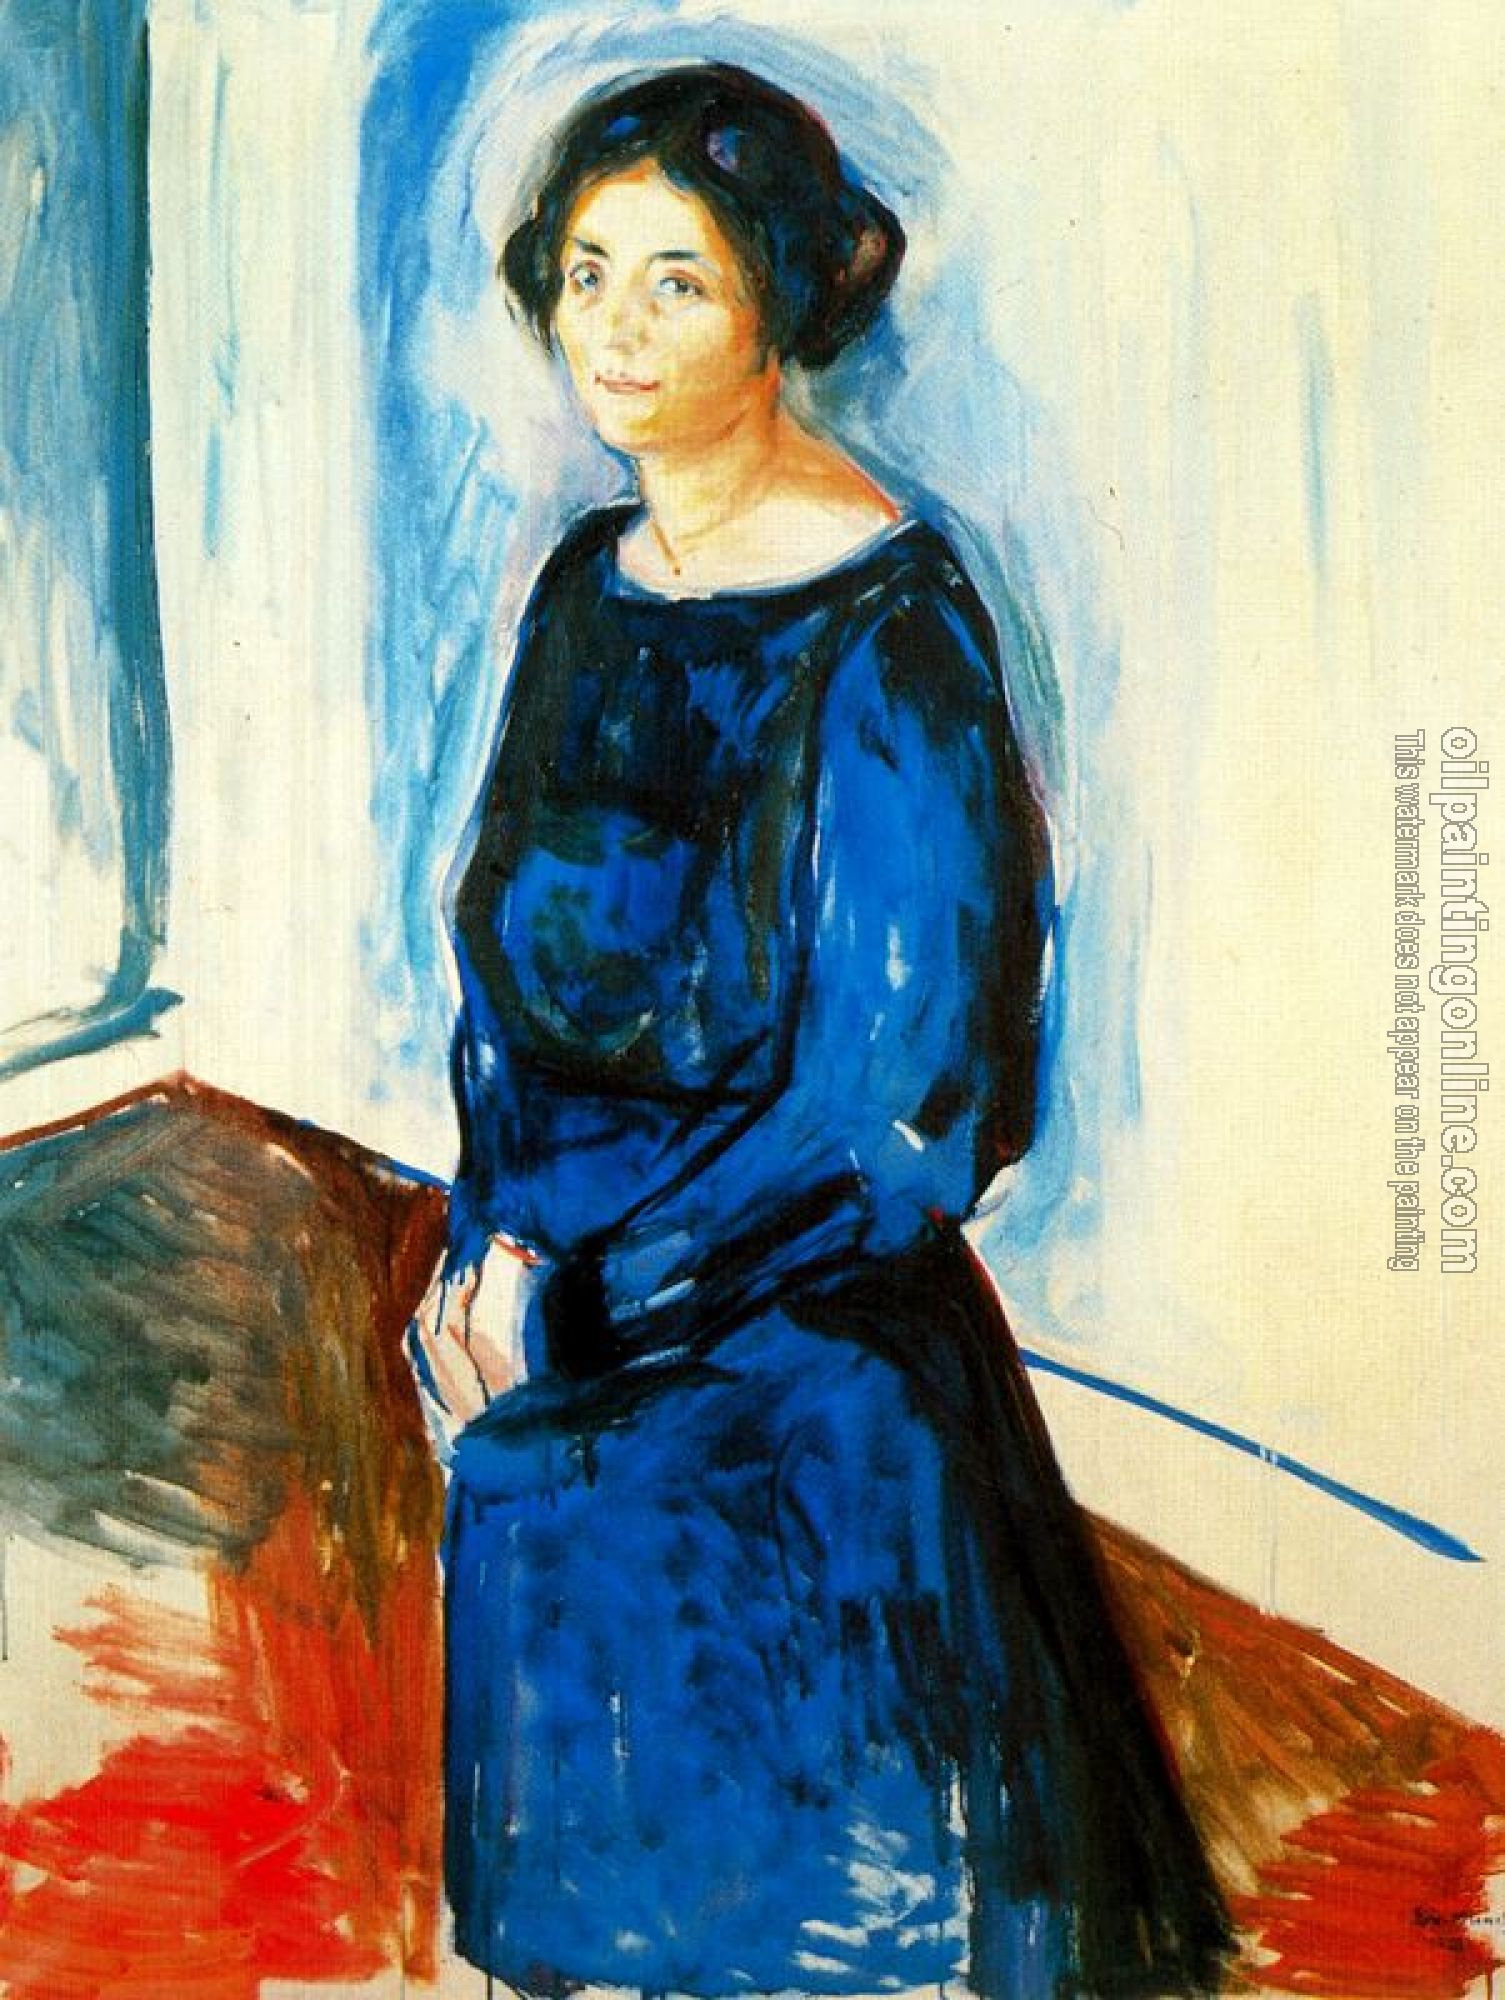 Munch, Edvard - Woman in Blue, Frau Barth